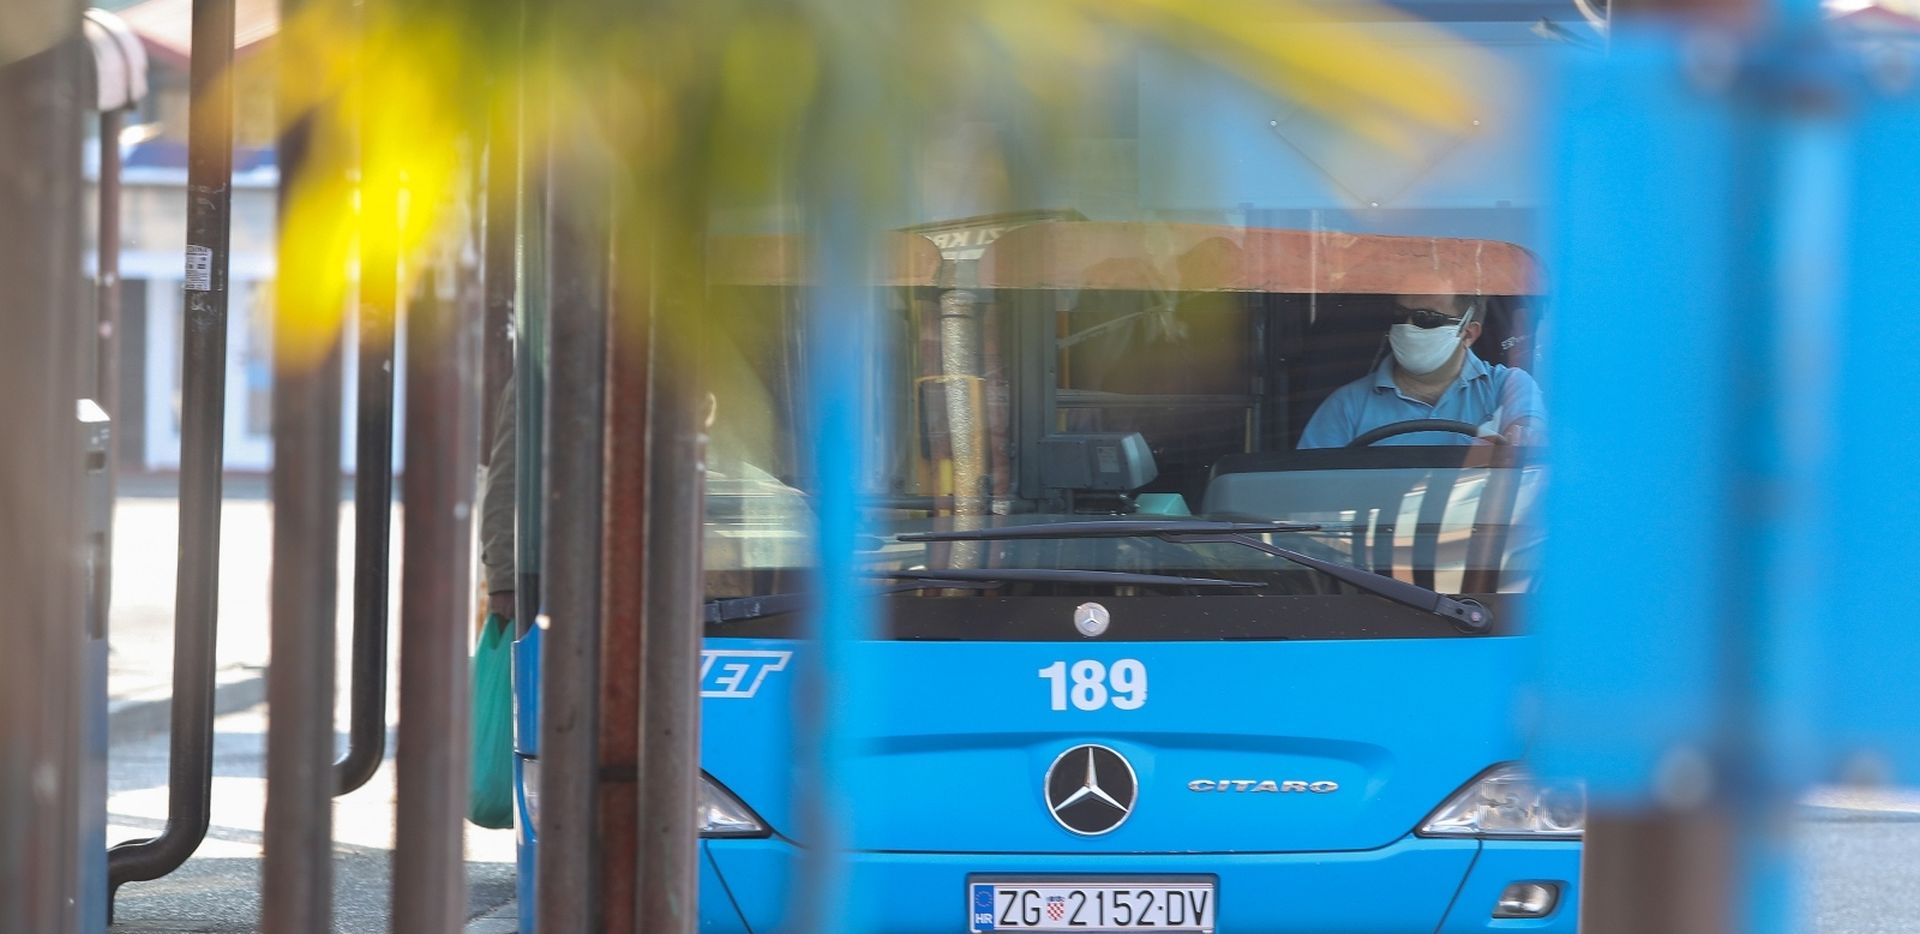 10.04.2020., Zagreb - Nakon ukidanja gradskog i medjugradskog prijevoza i uz uvodjenje nekoliko linija ZET-a okretiste Crnomerec sablasno je prazno. 
Photo: Luka Stanzl/PIXSELL